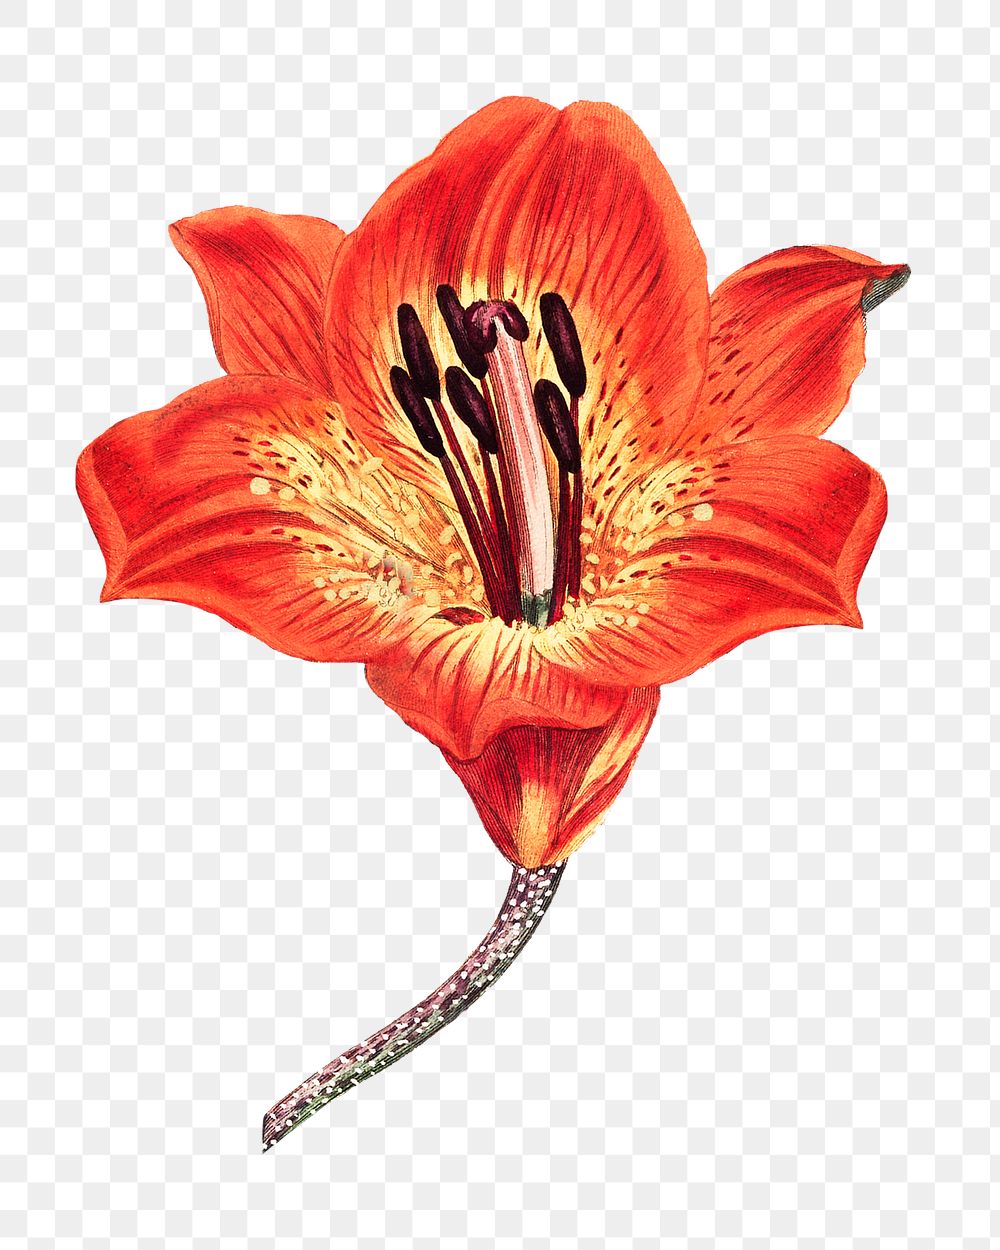 Vintage orange lily flower design element